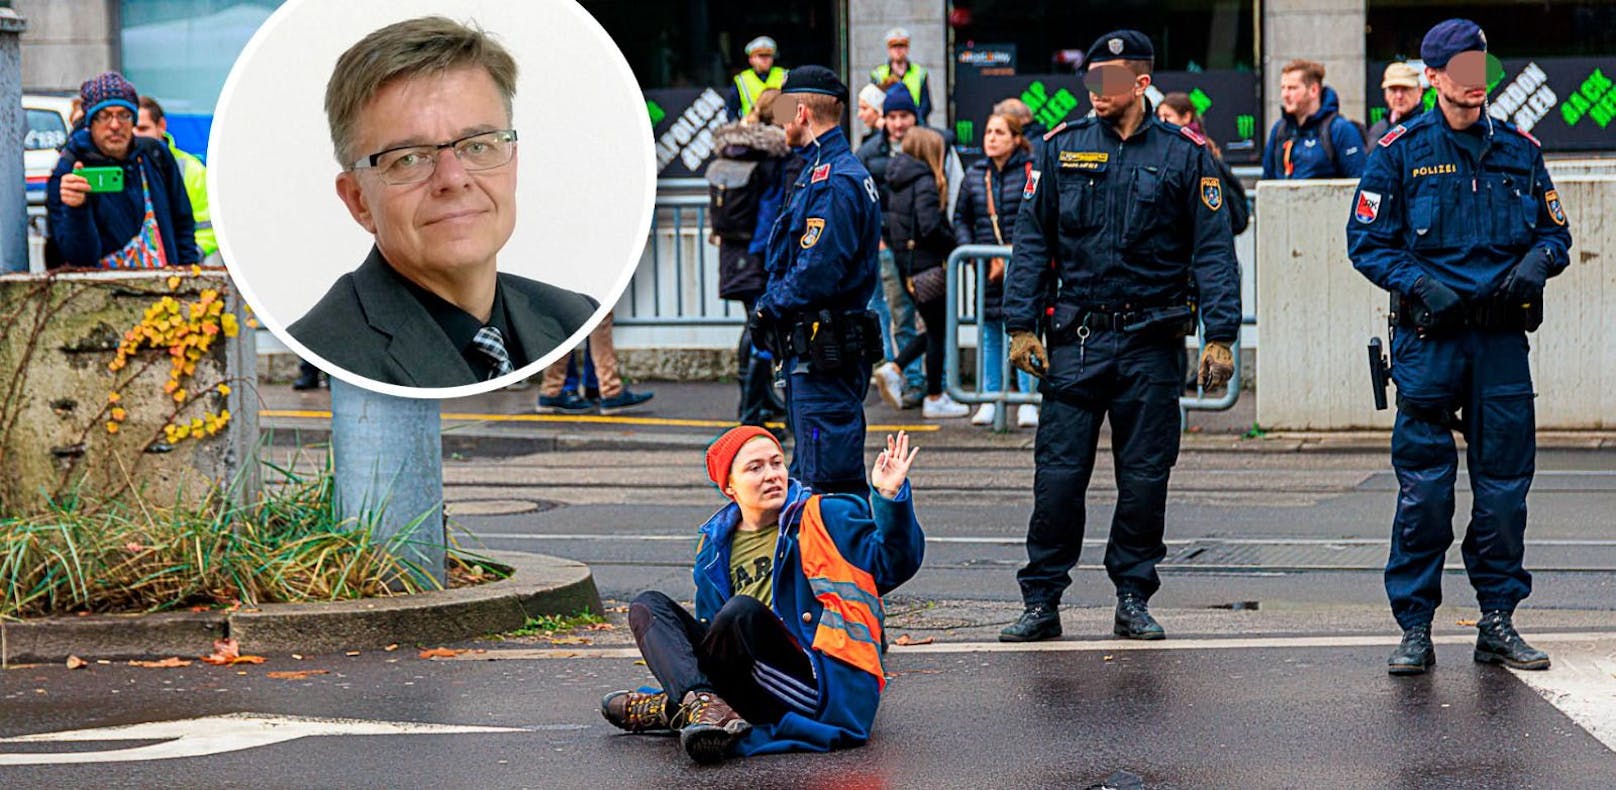 Am Montag wurde in Linz eine Straße blockiert. Jurist Birklbauer dazu: "Rein strafrechtlich werden wir die Aktionen nicht in den Griff bekommen."